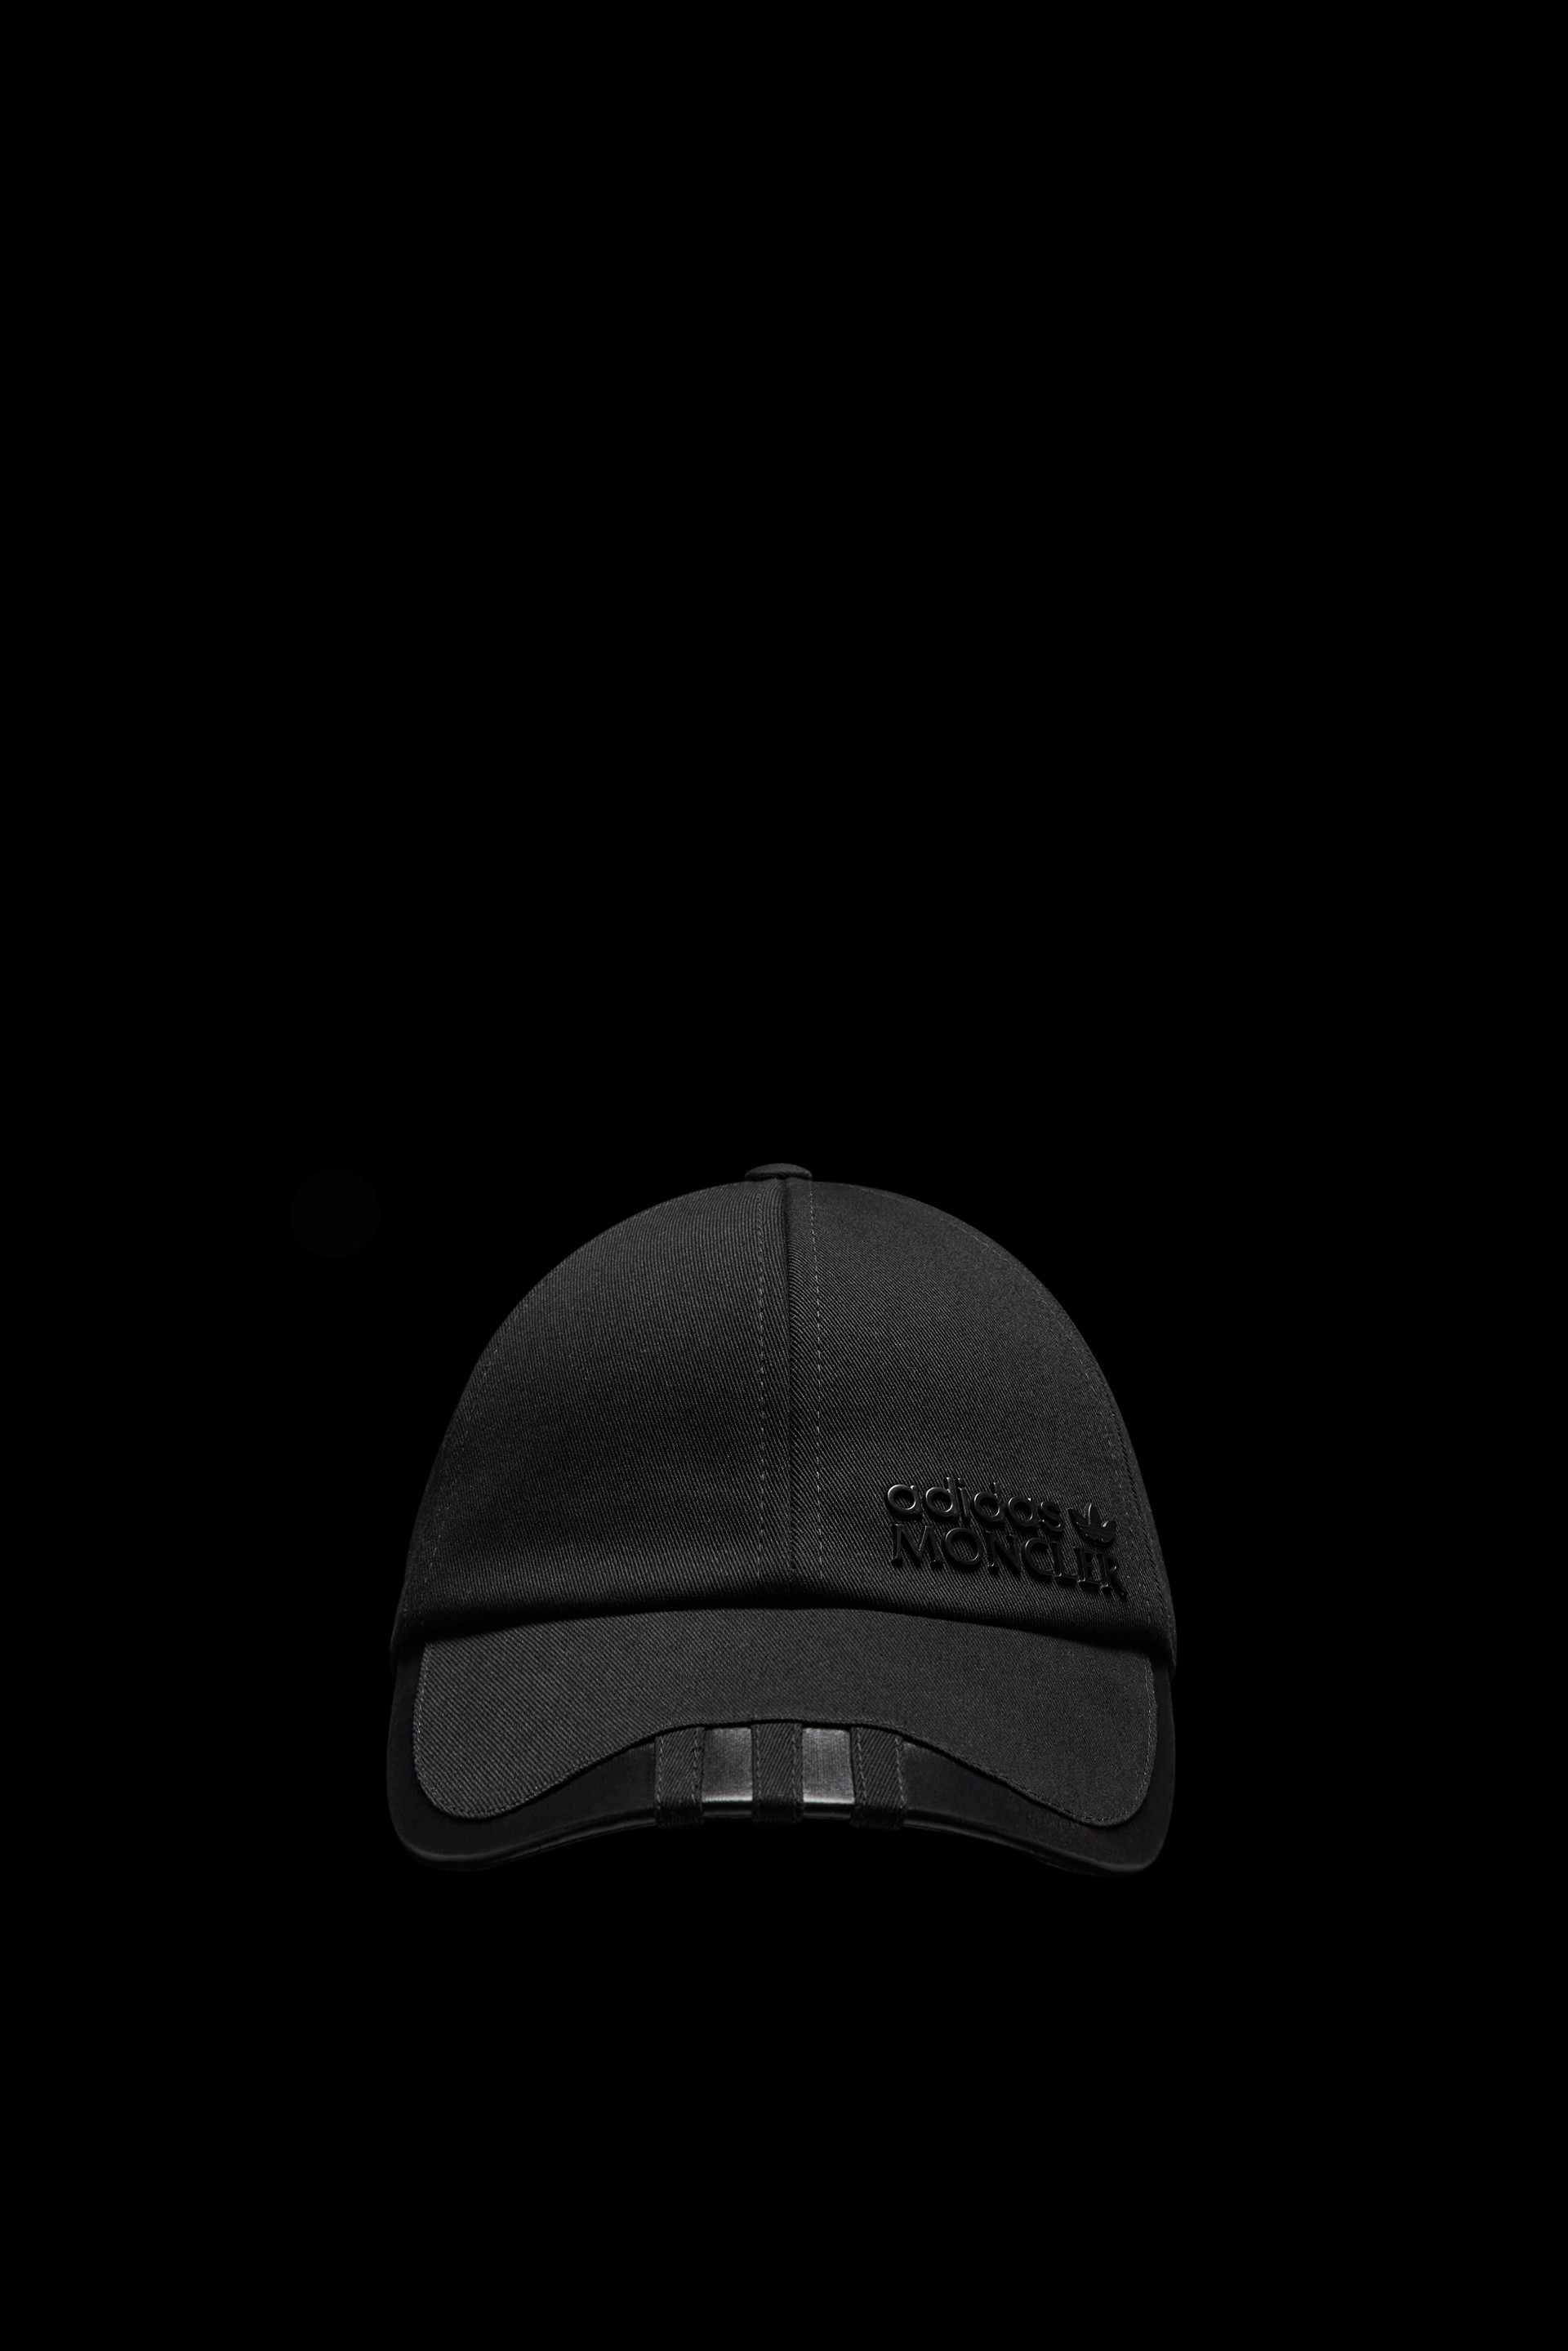 ブラック キャップ : Moncler x adidas Originals 向けの Genius 